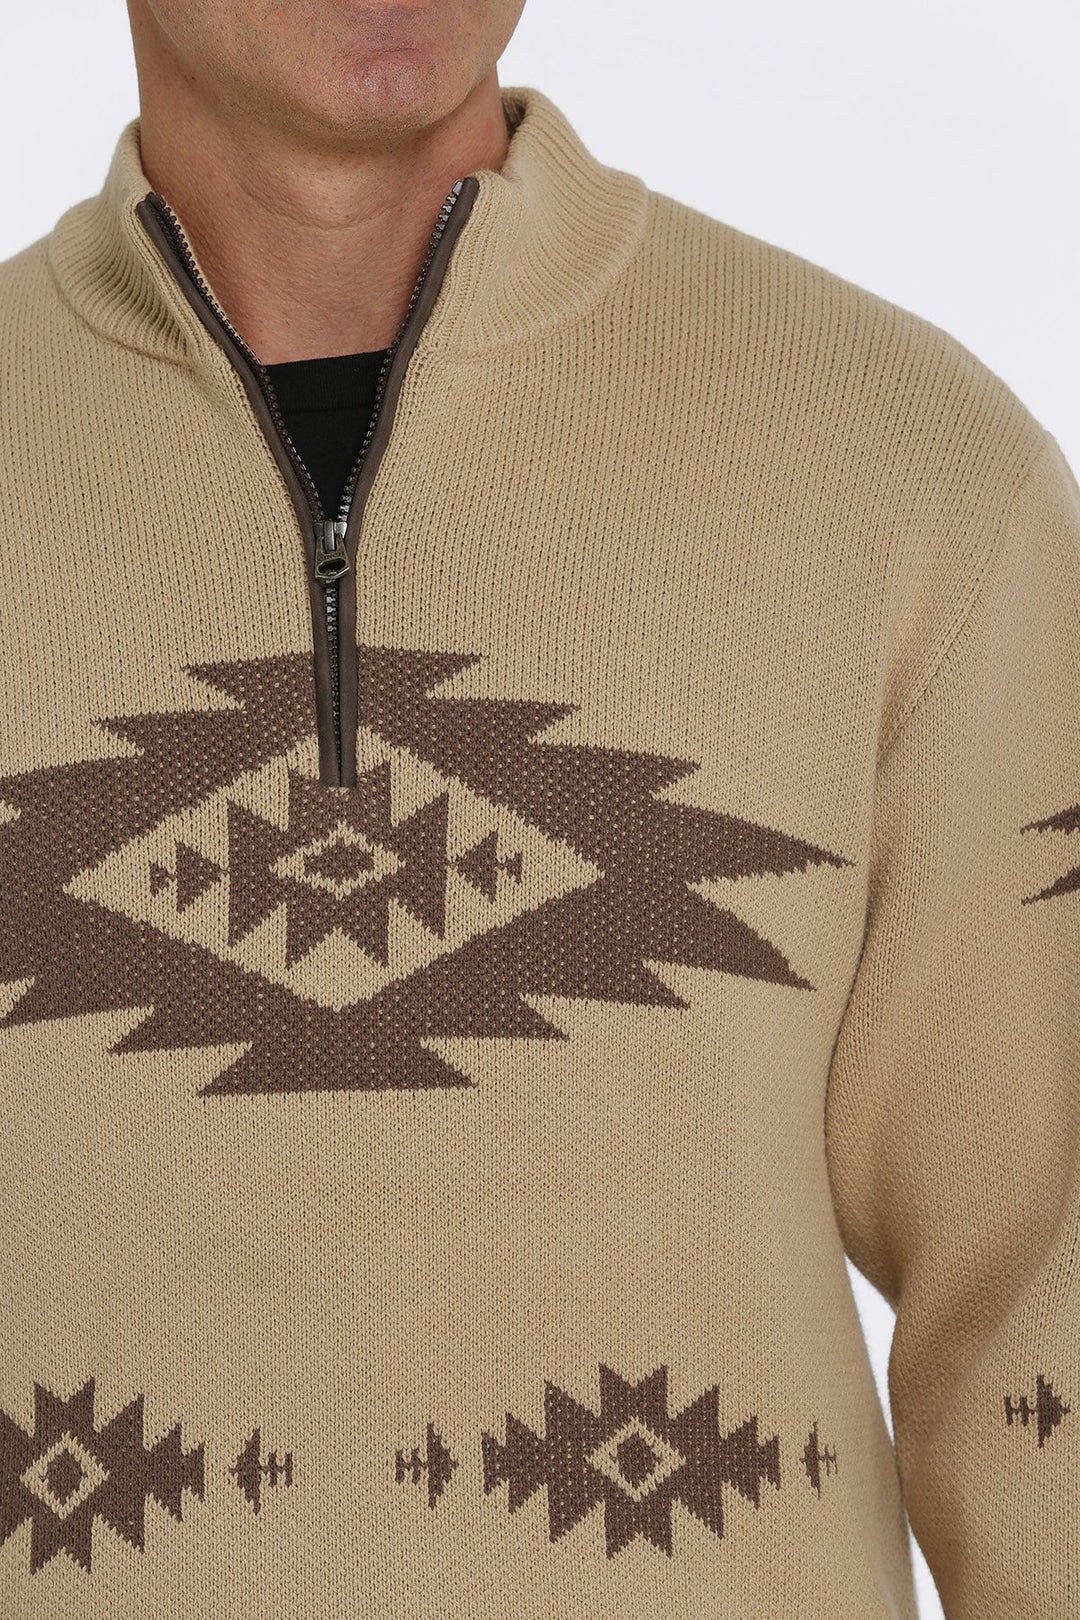 Cinch Men's Khaki 1/4 Zip Aztec Printed Pullover Sweater